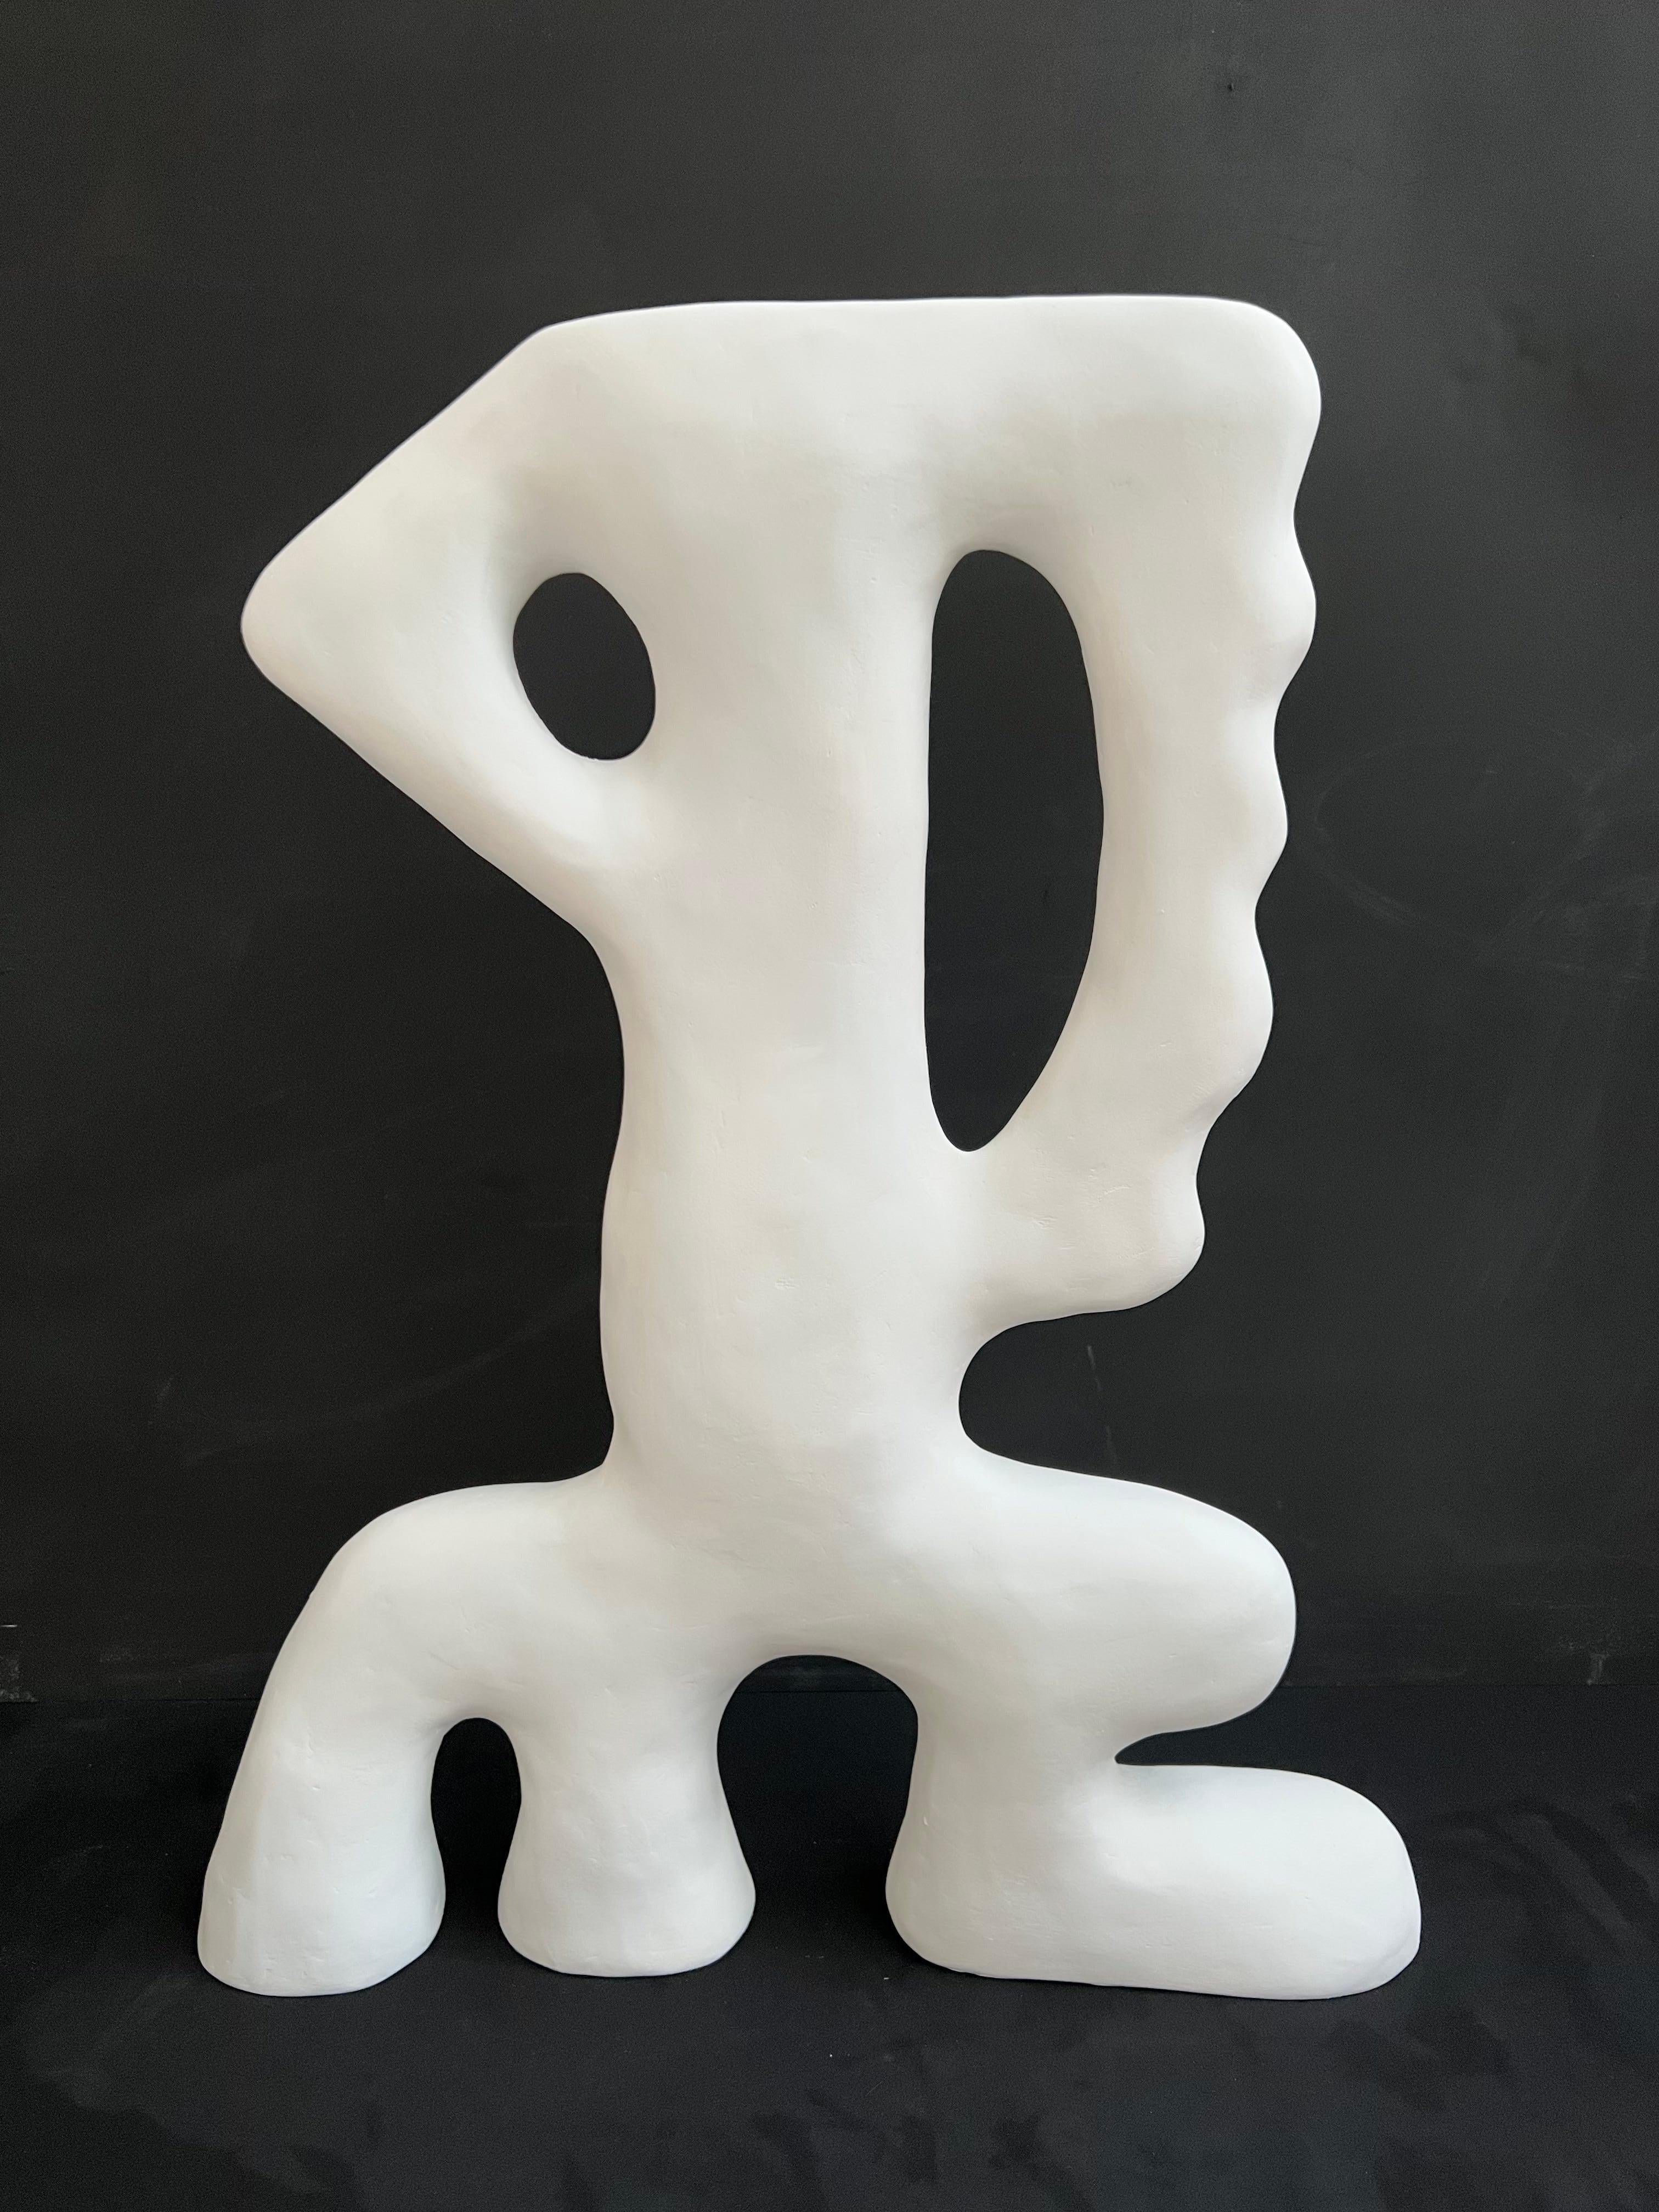 
Eine einmalige abstrakte Skulptur in Weiß aus der Serie 